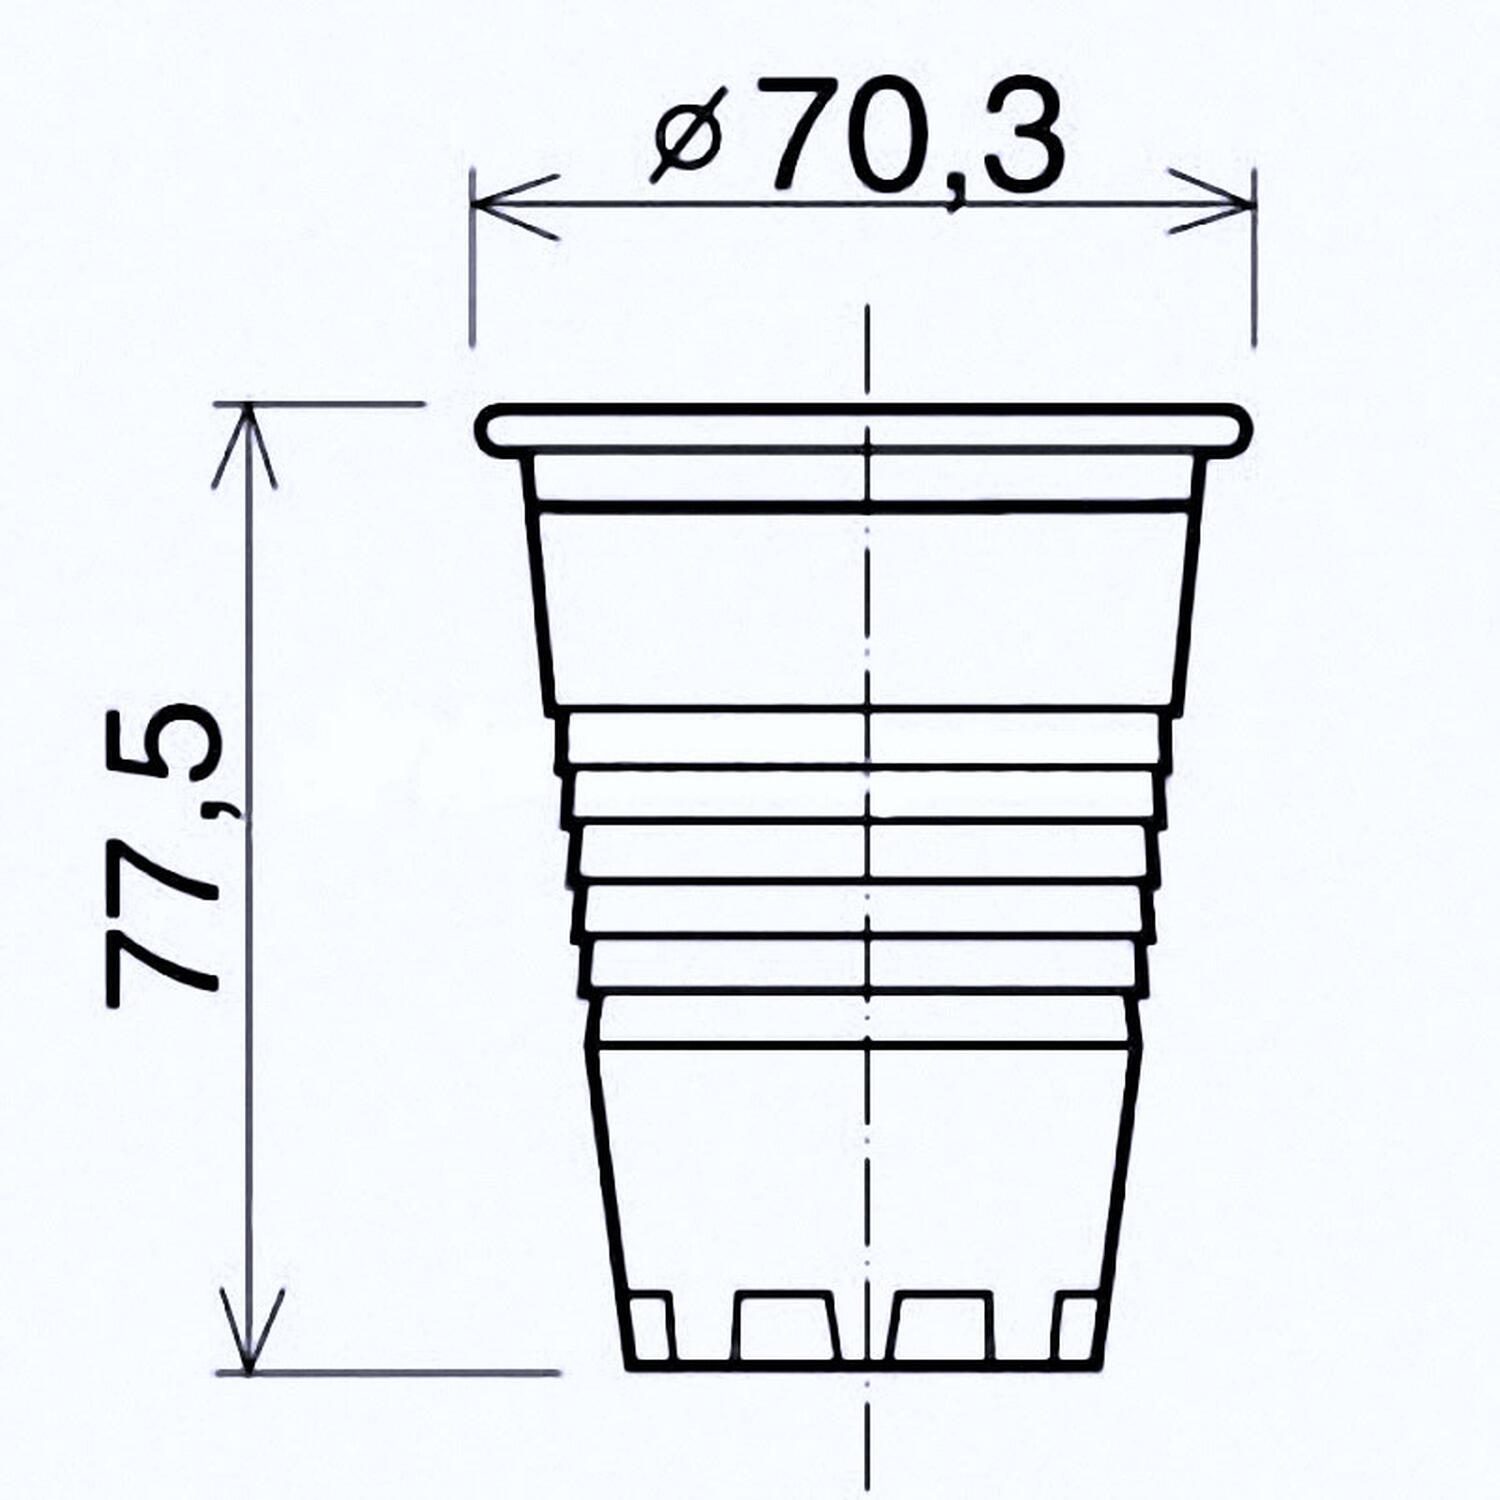 Trinkbecher wei 0,15 l, 150 ml aus PP,  70 mm, 100 Stk.